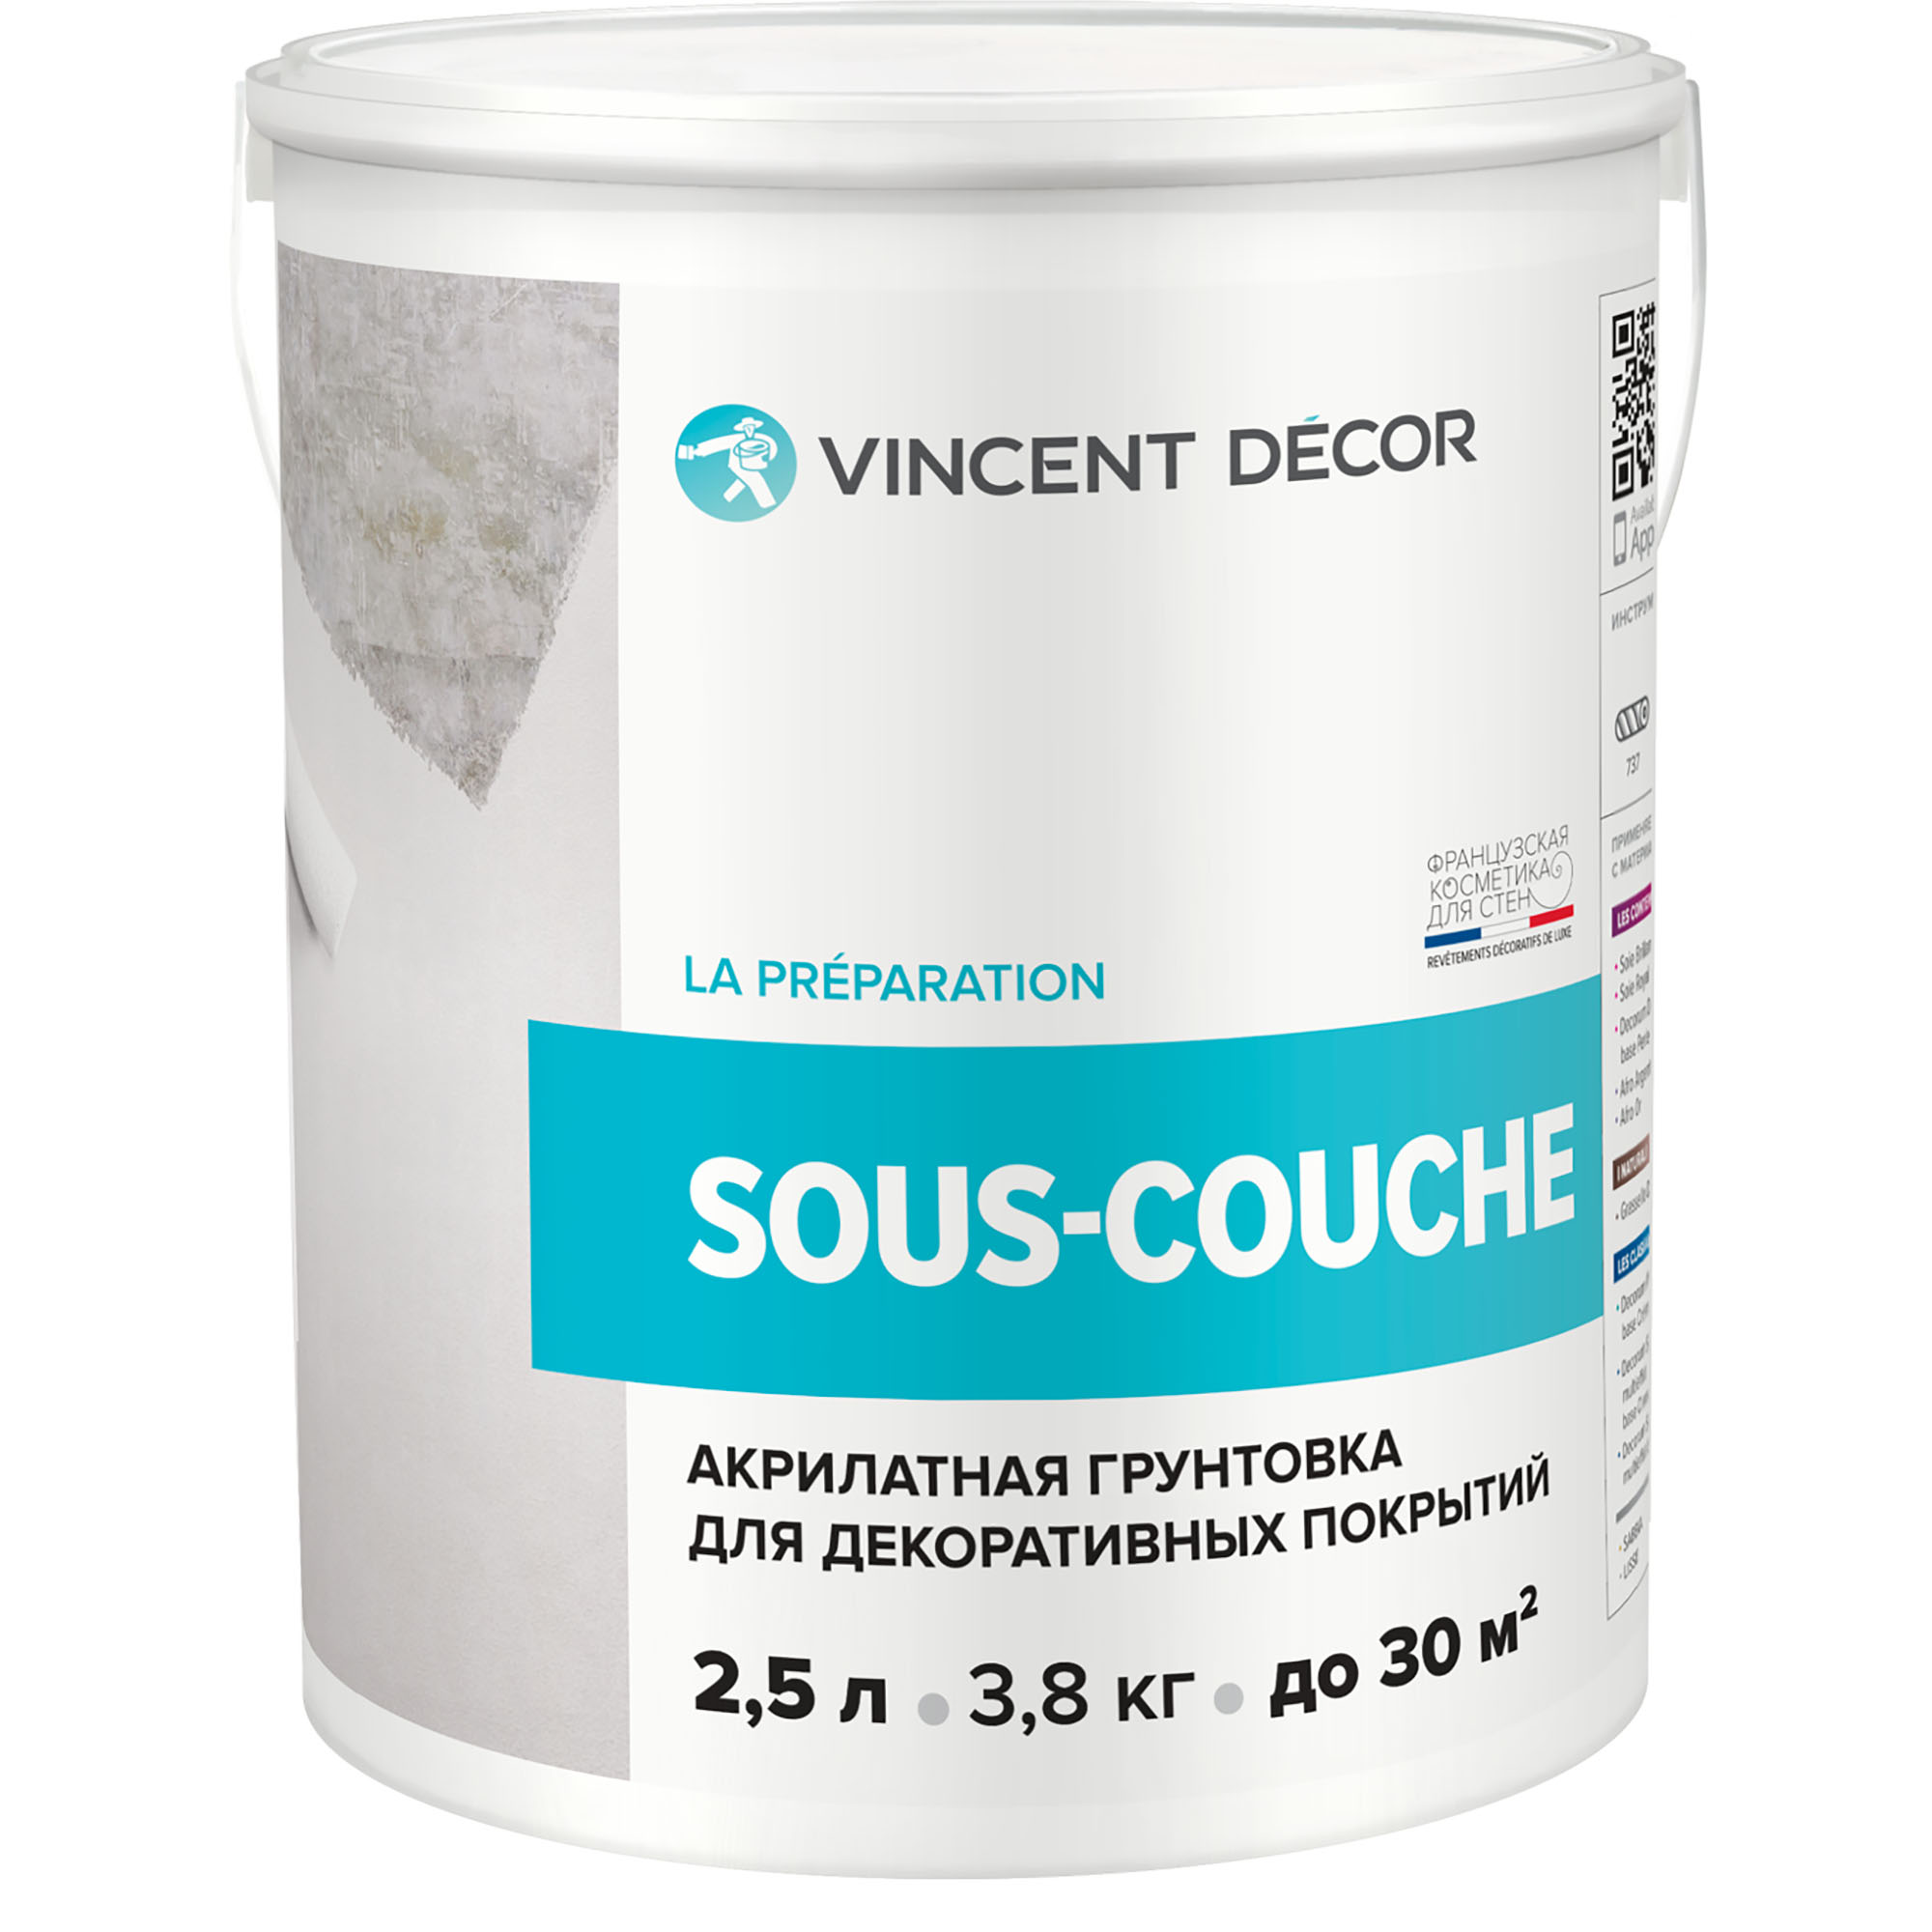 Грунтовка для декоративных покрытий Vincent Decor Sous-Couсhe 2,5 л адгезионная грунтовка для декоративных покрытий farbitex